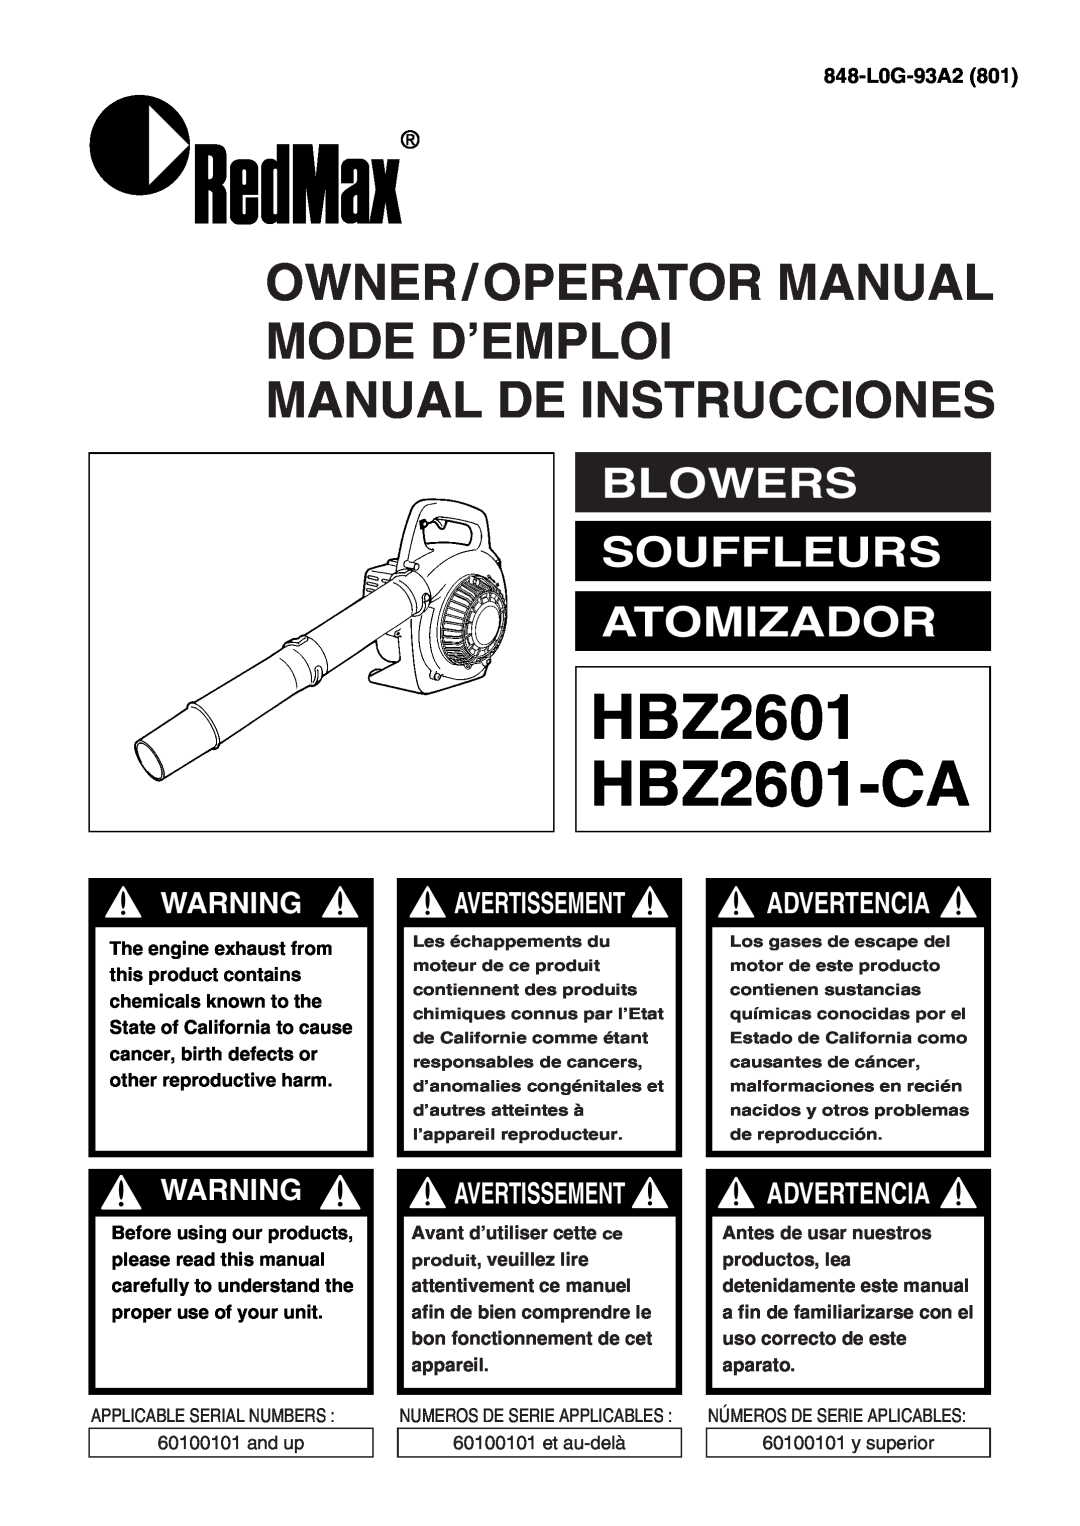 Zenoah manual Blowers Souffleurs Atomizador, 848-L0G-93A2, HBZ2601 HBZ2601-CA, Advertencia, Avertissement 